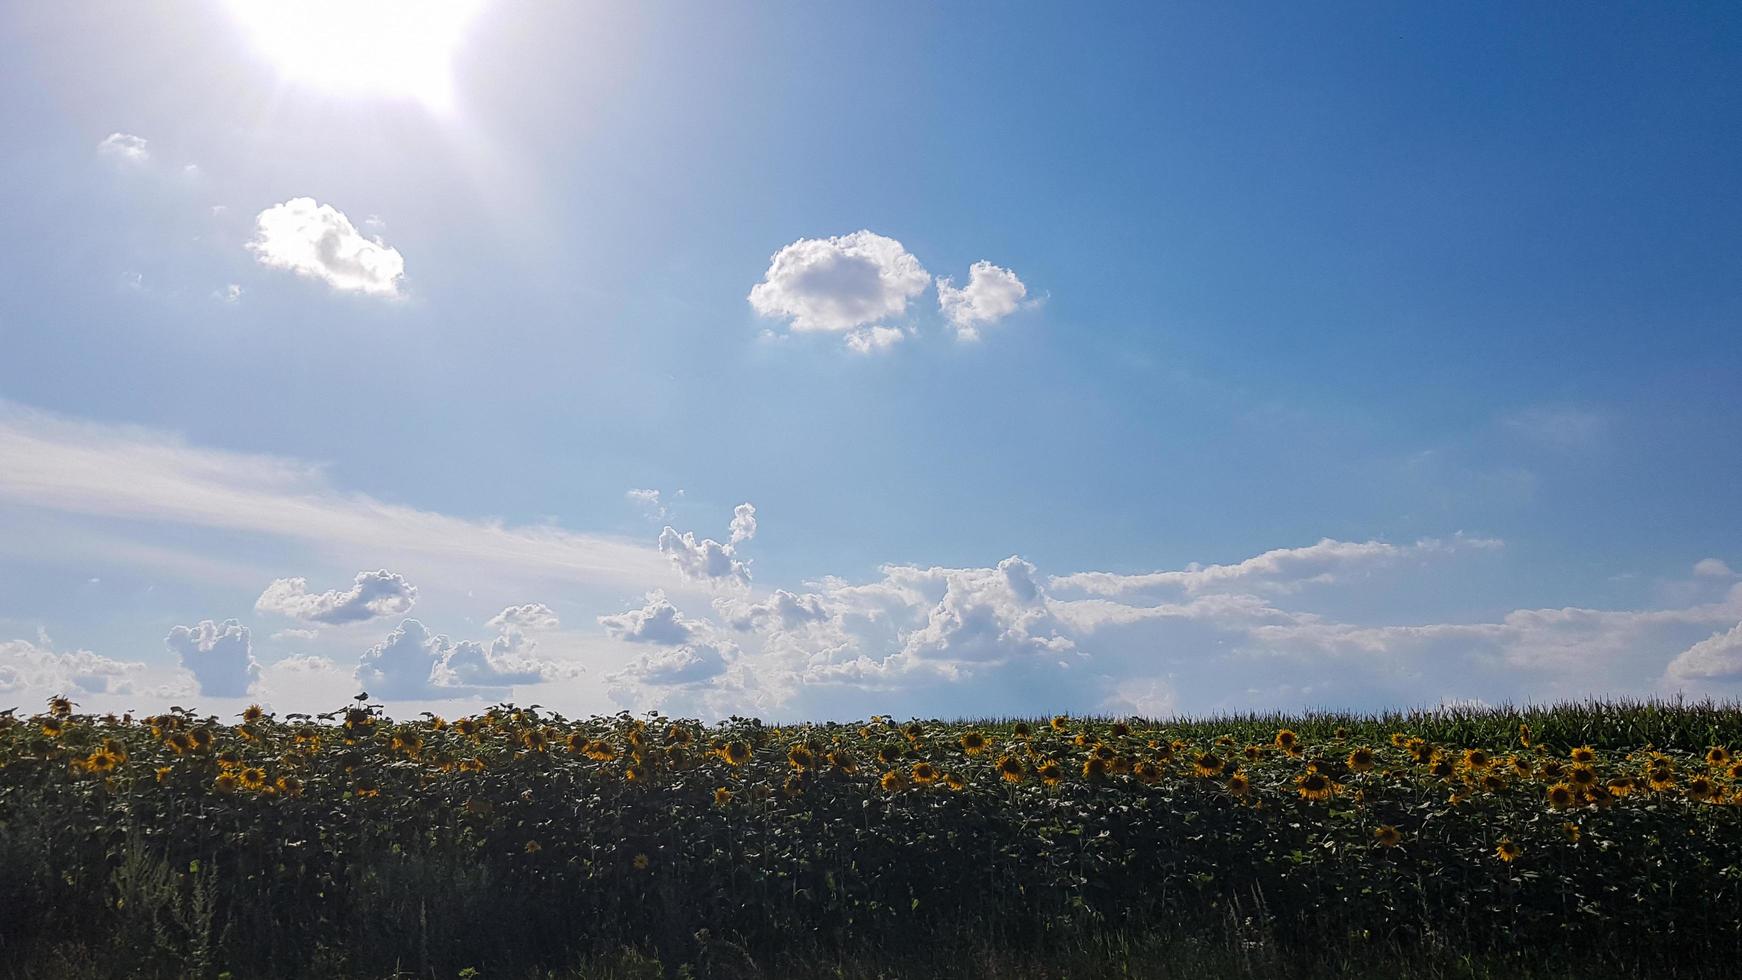 bellissimo paesaggio, campo di splendidi e luminosi girasoli giallo-oro, cielo azzurro e nuvole bianche sullo sfondo in una luminosa giornata di sole. foto di concetto di ecologia. settore agricolo.